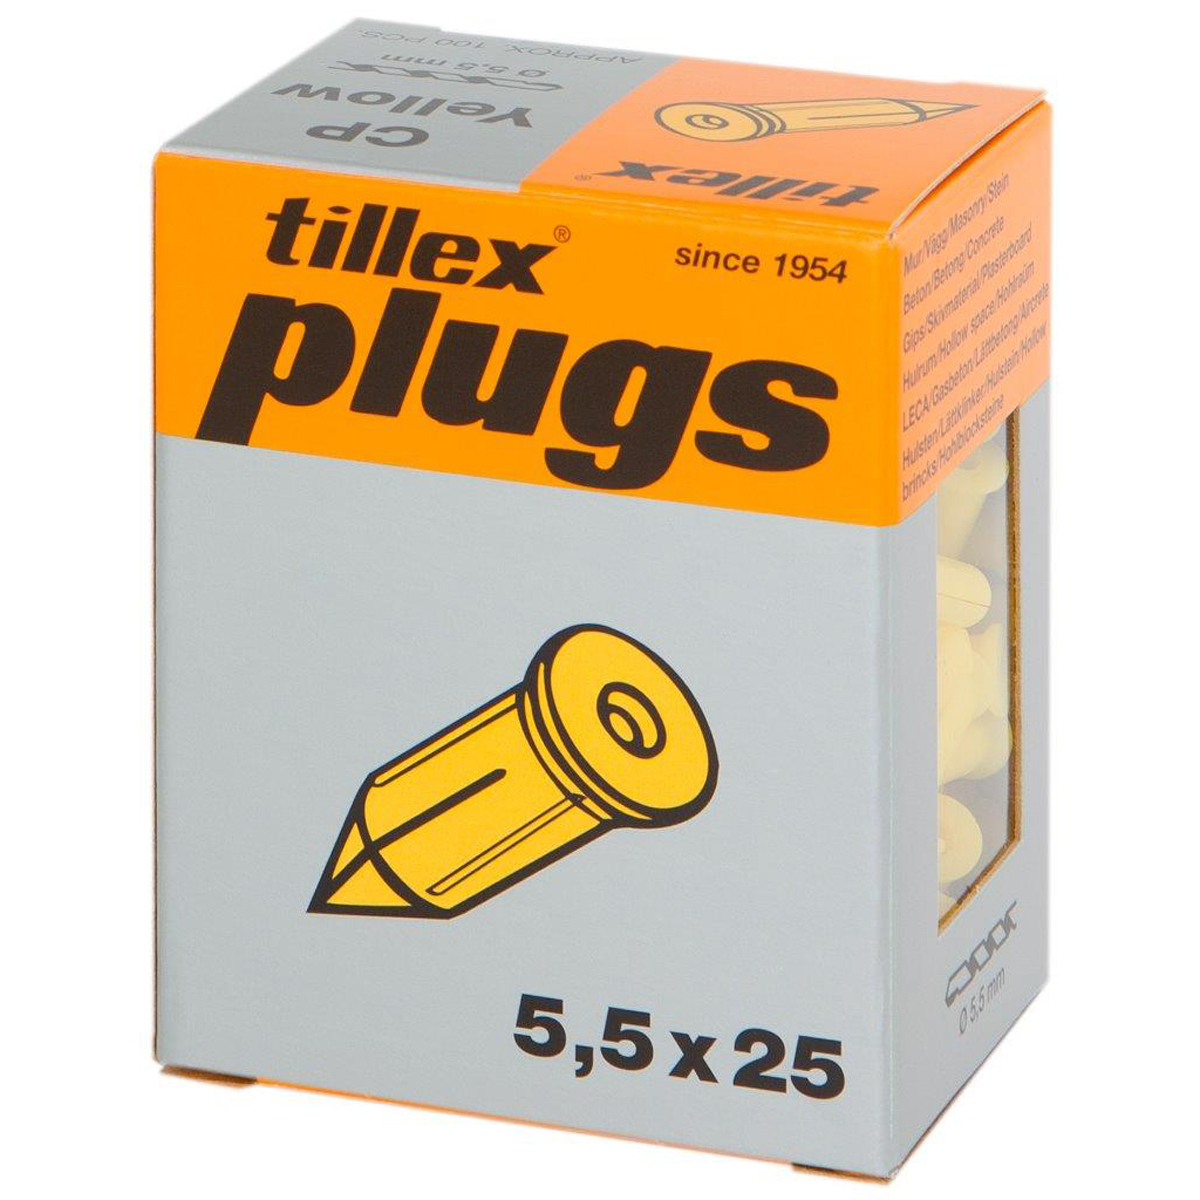  фунт желтый 20 шт в пачке Tillex - Alve